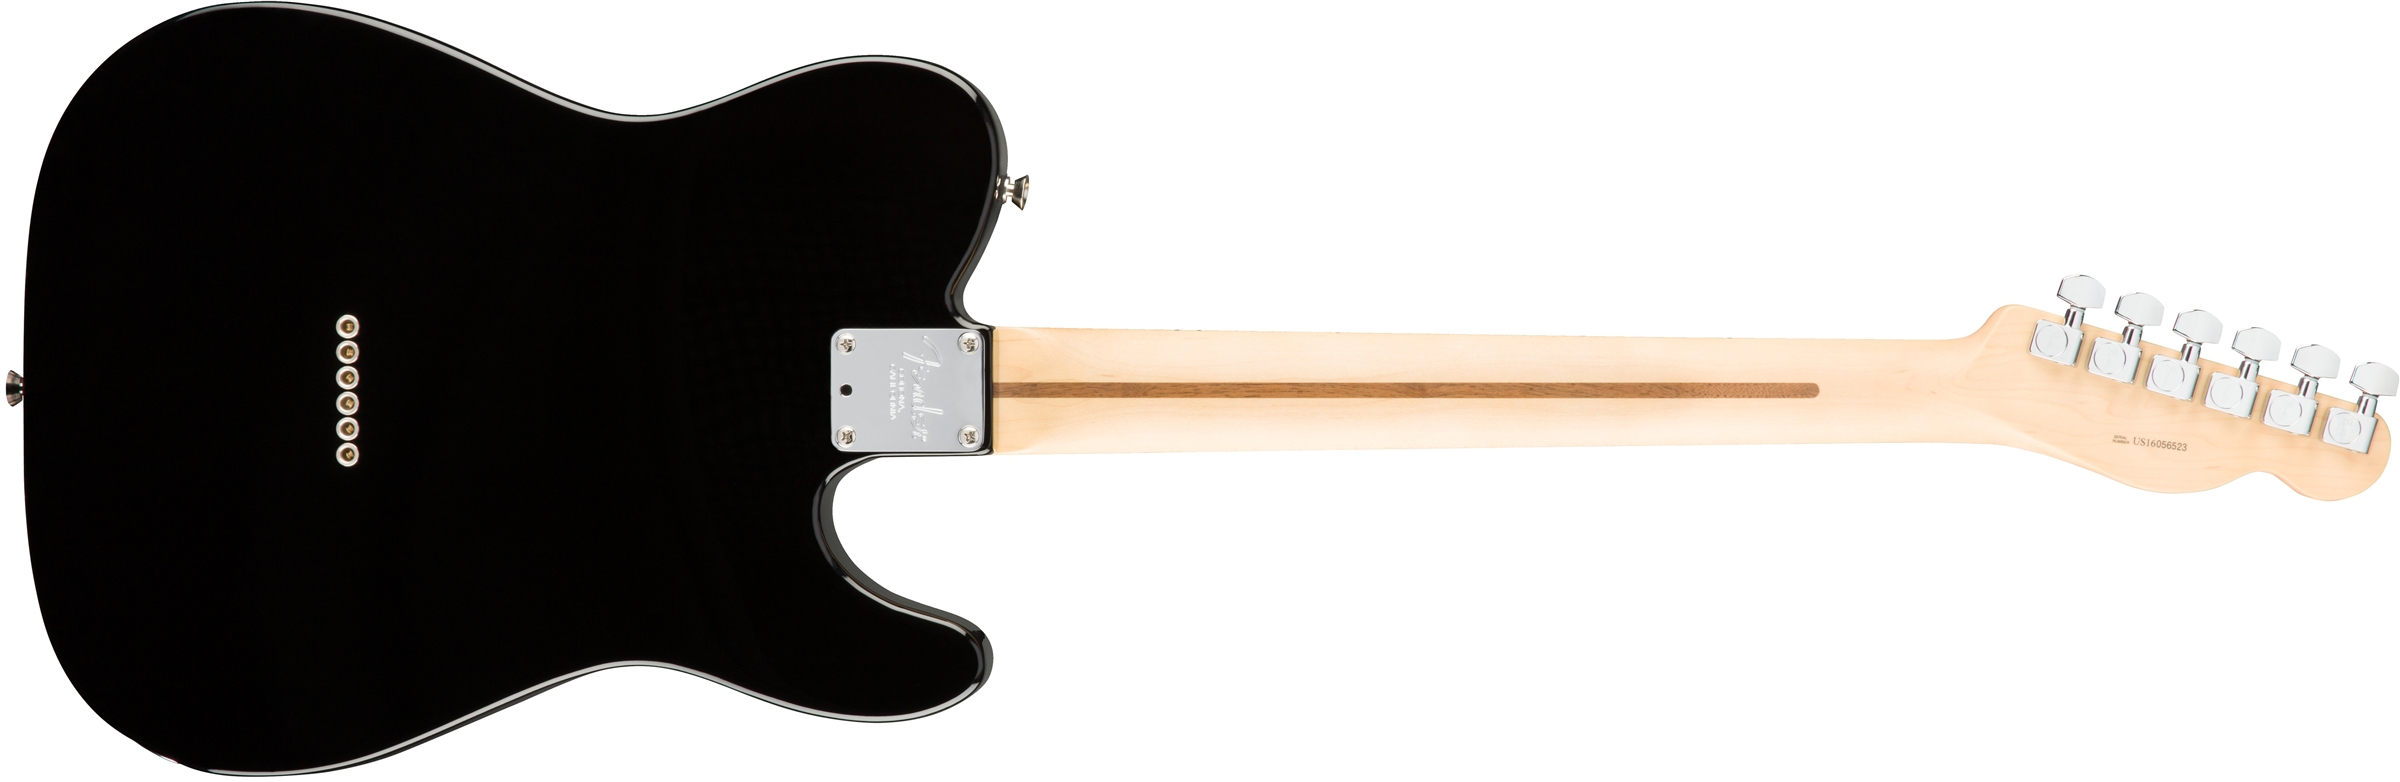 Fender Tele American Professional Lh Usa Gaucher 2s Mn - Black - Guitarra electrica para zurdos - Variation 1